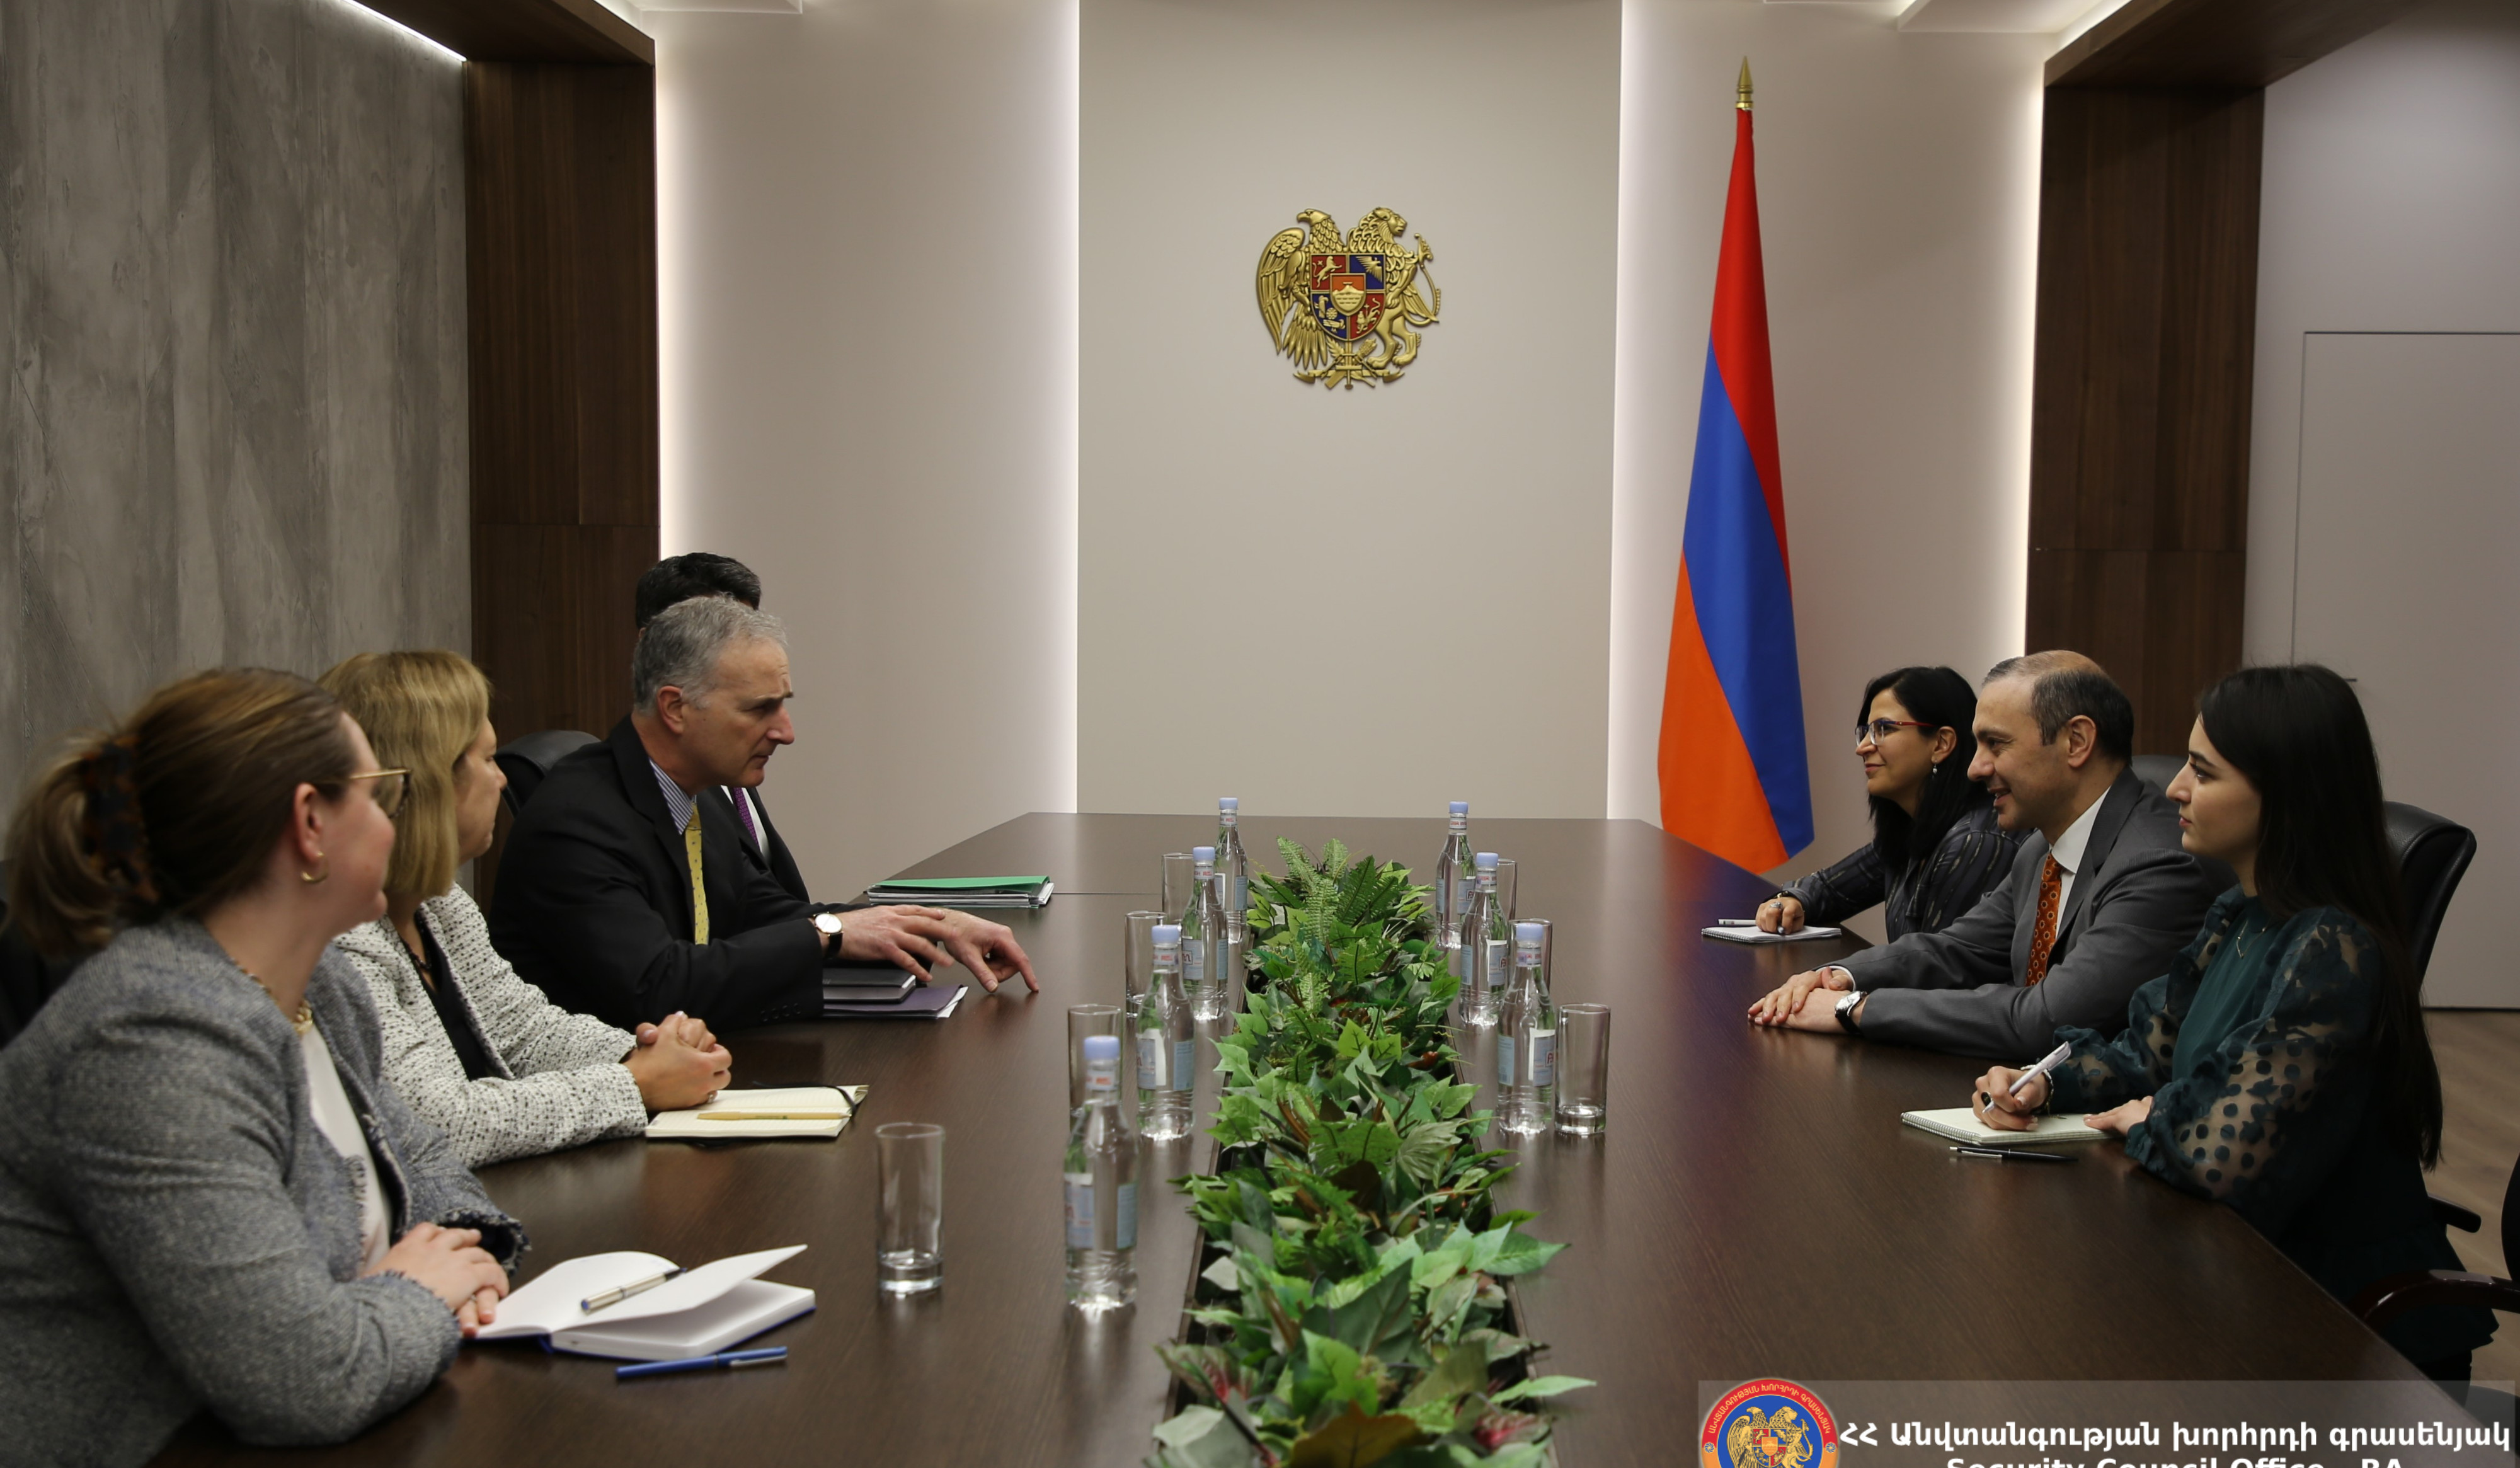 Գրիգորյանն ու ԱՄՆ Կովկասյան բանակցությունների հարցերով ավագ խորհրդականը քննարկել են հայ-ադրբեջանական հարաբերությունների կարգավորման բանակցային ընթացքը